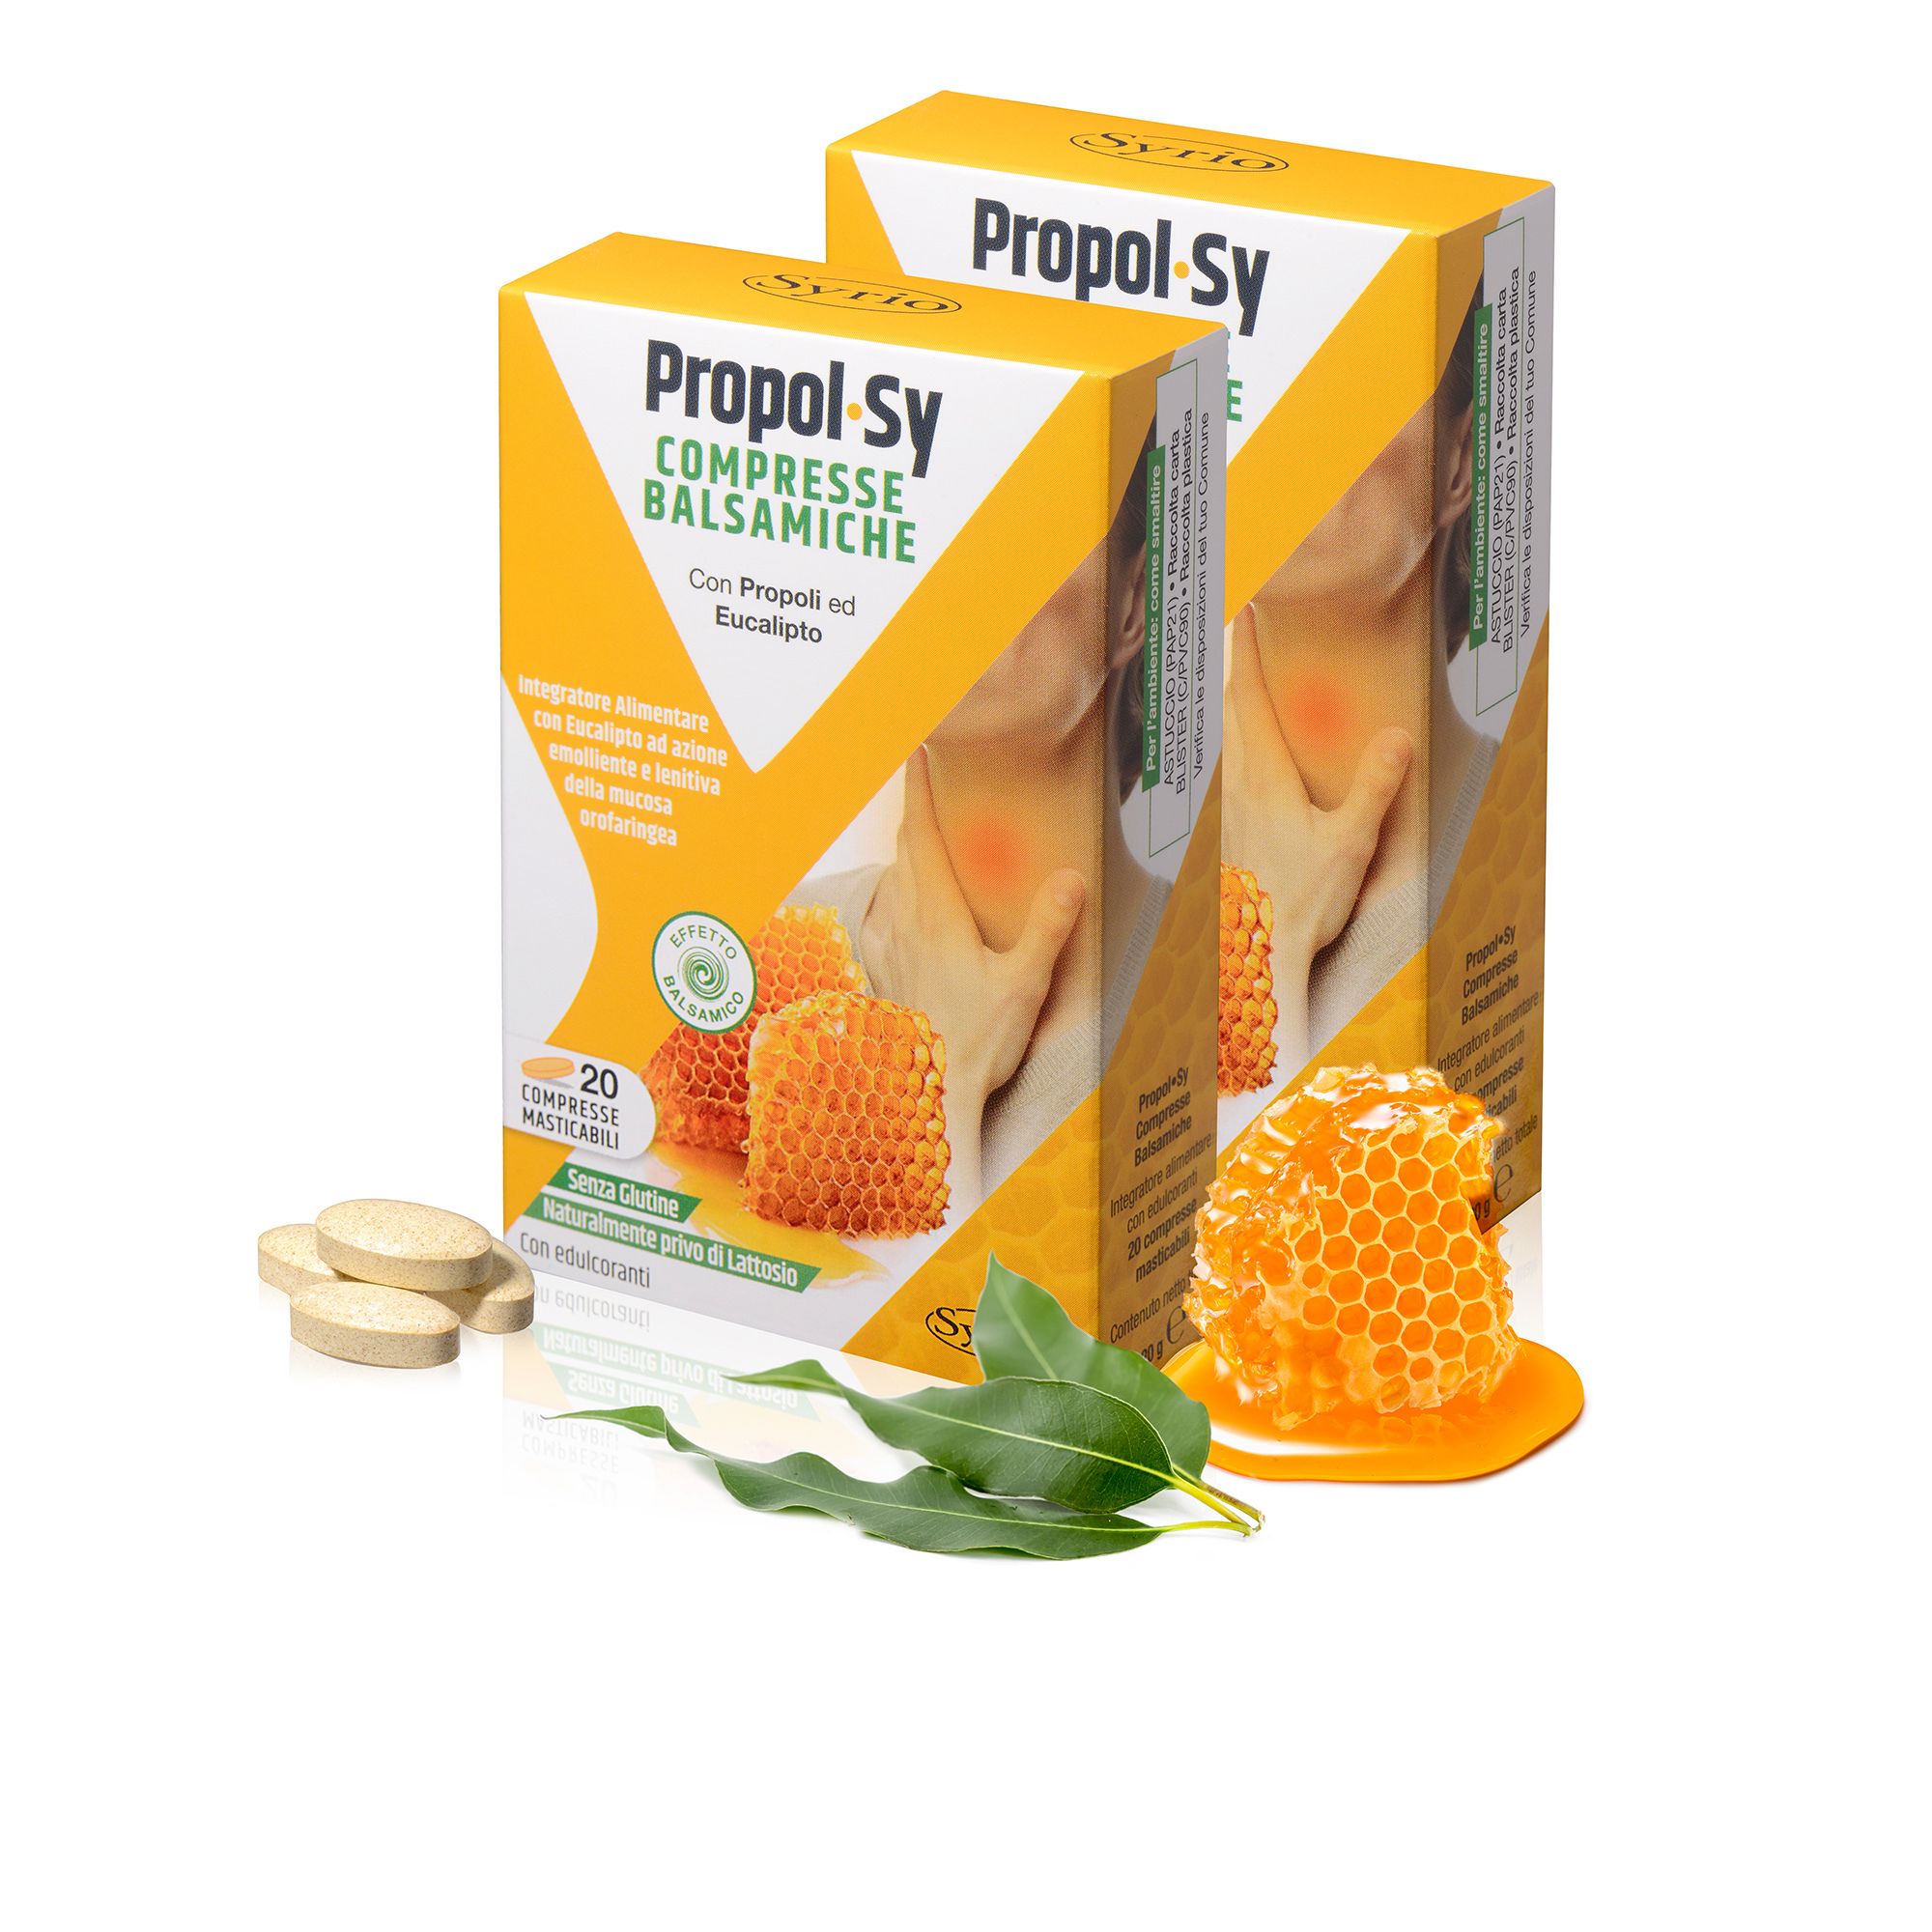 Image of Propol Sy integratore alimentare (2 confezioni)